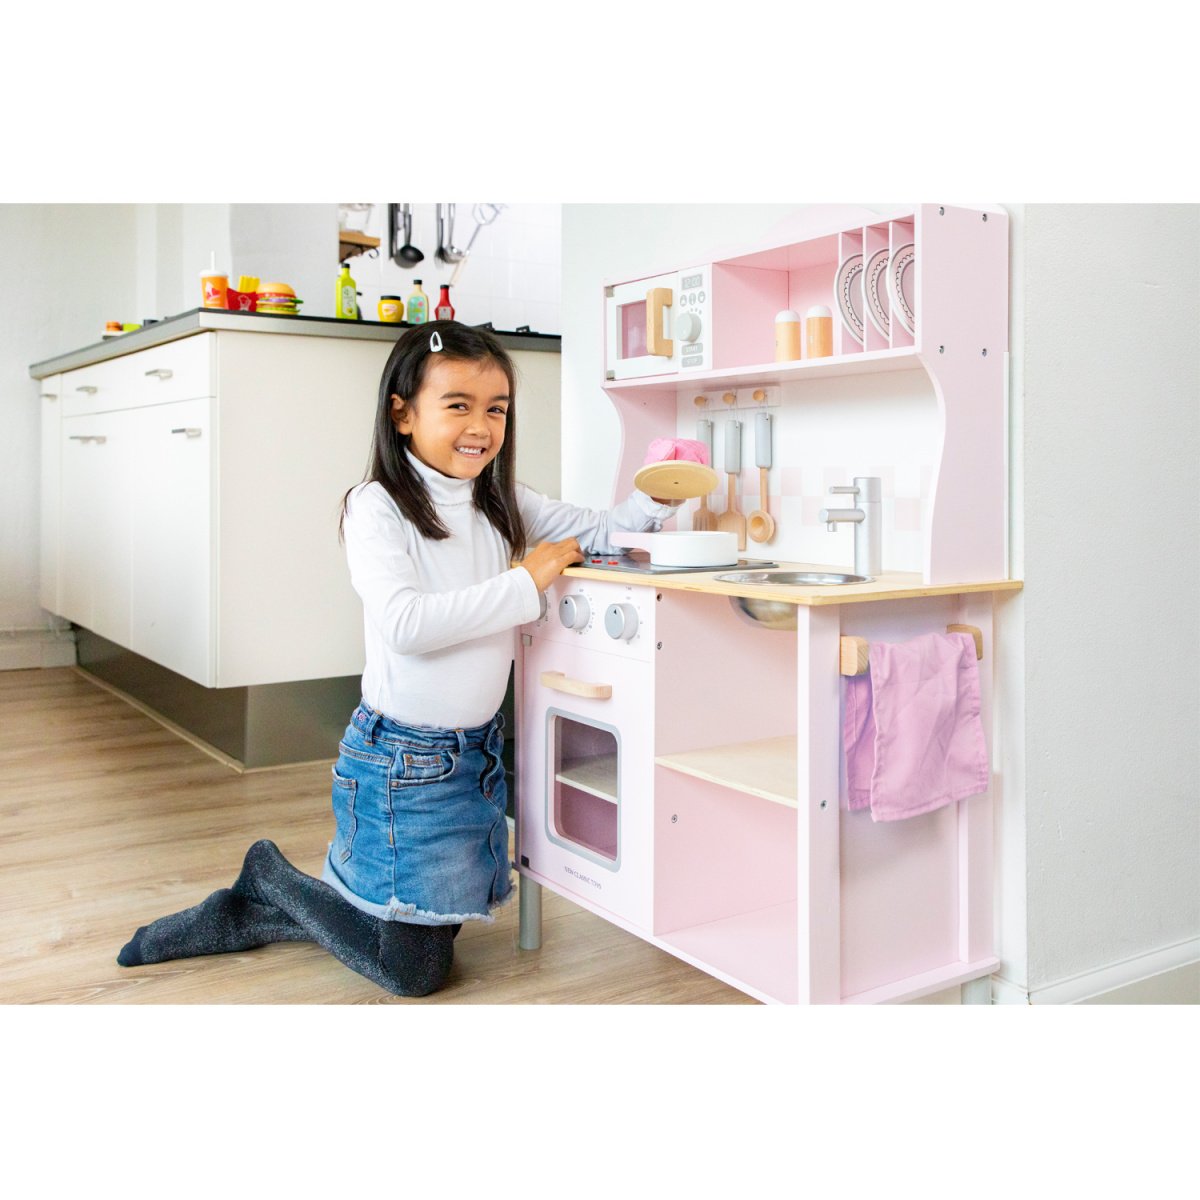 Игровой набор New Classic Toys Кухня Modern, розовый (11067) - фото 4